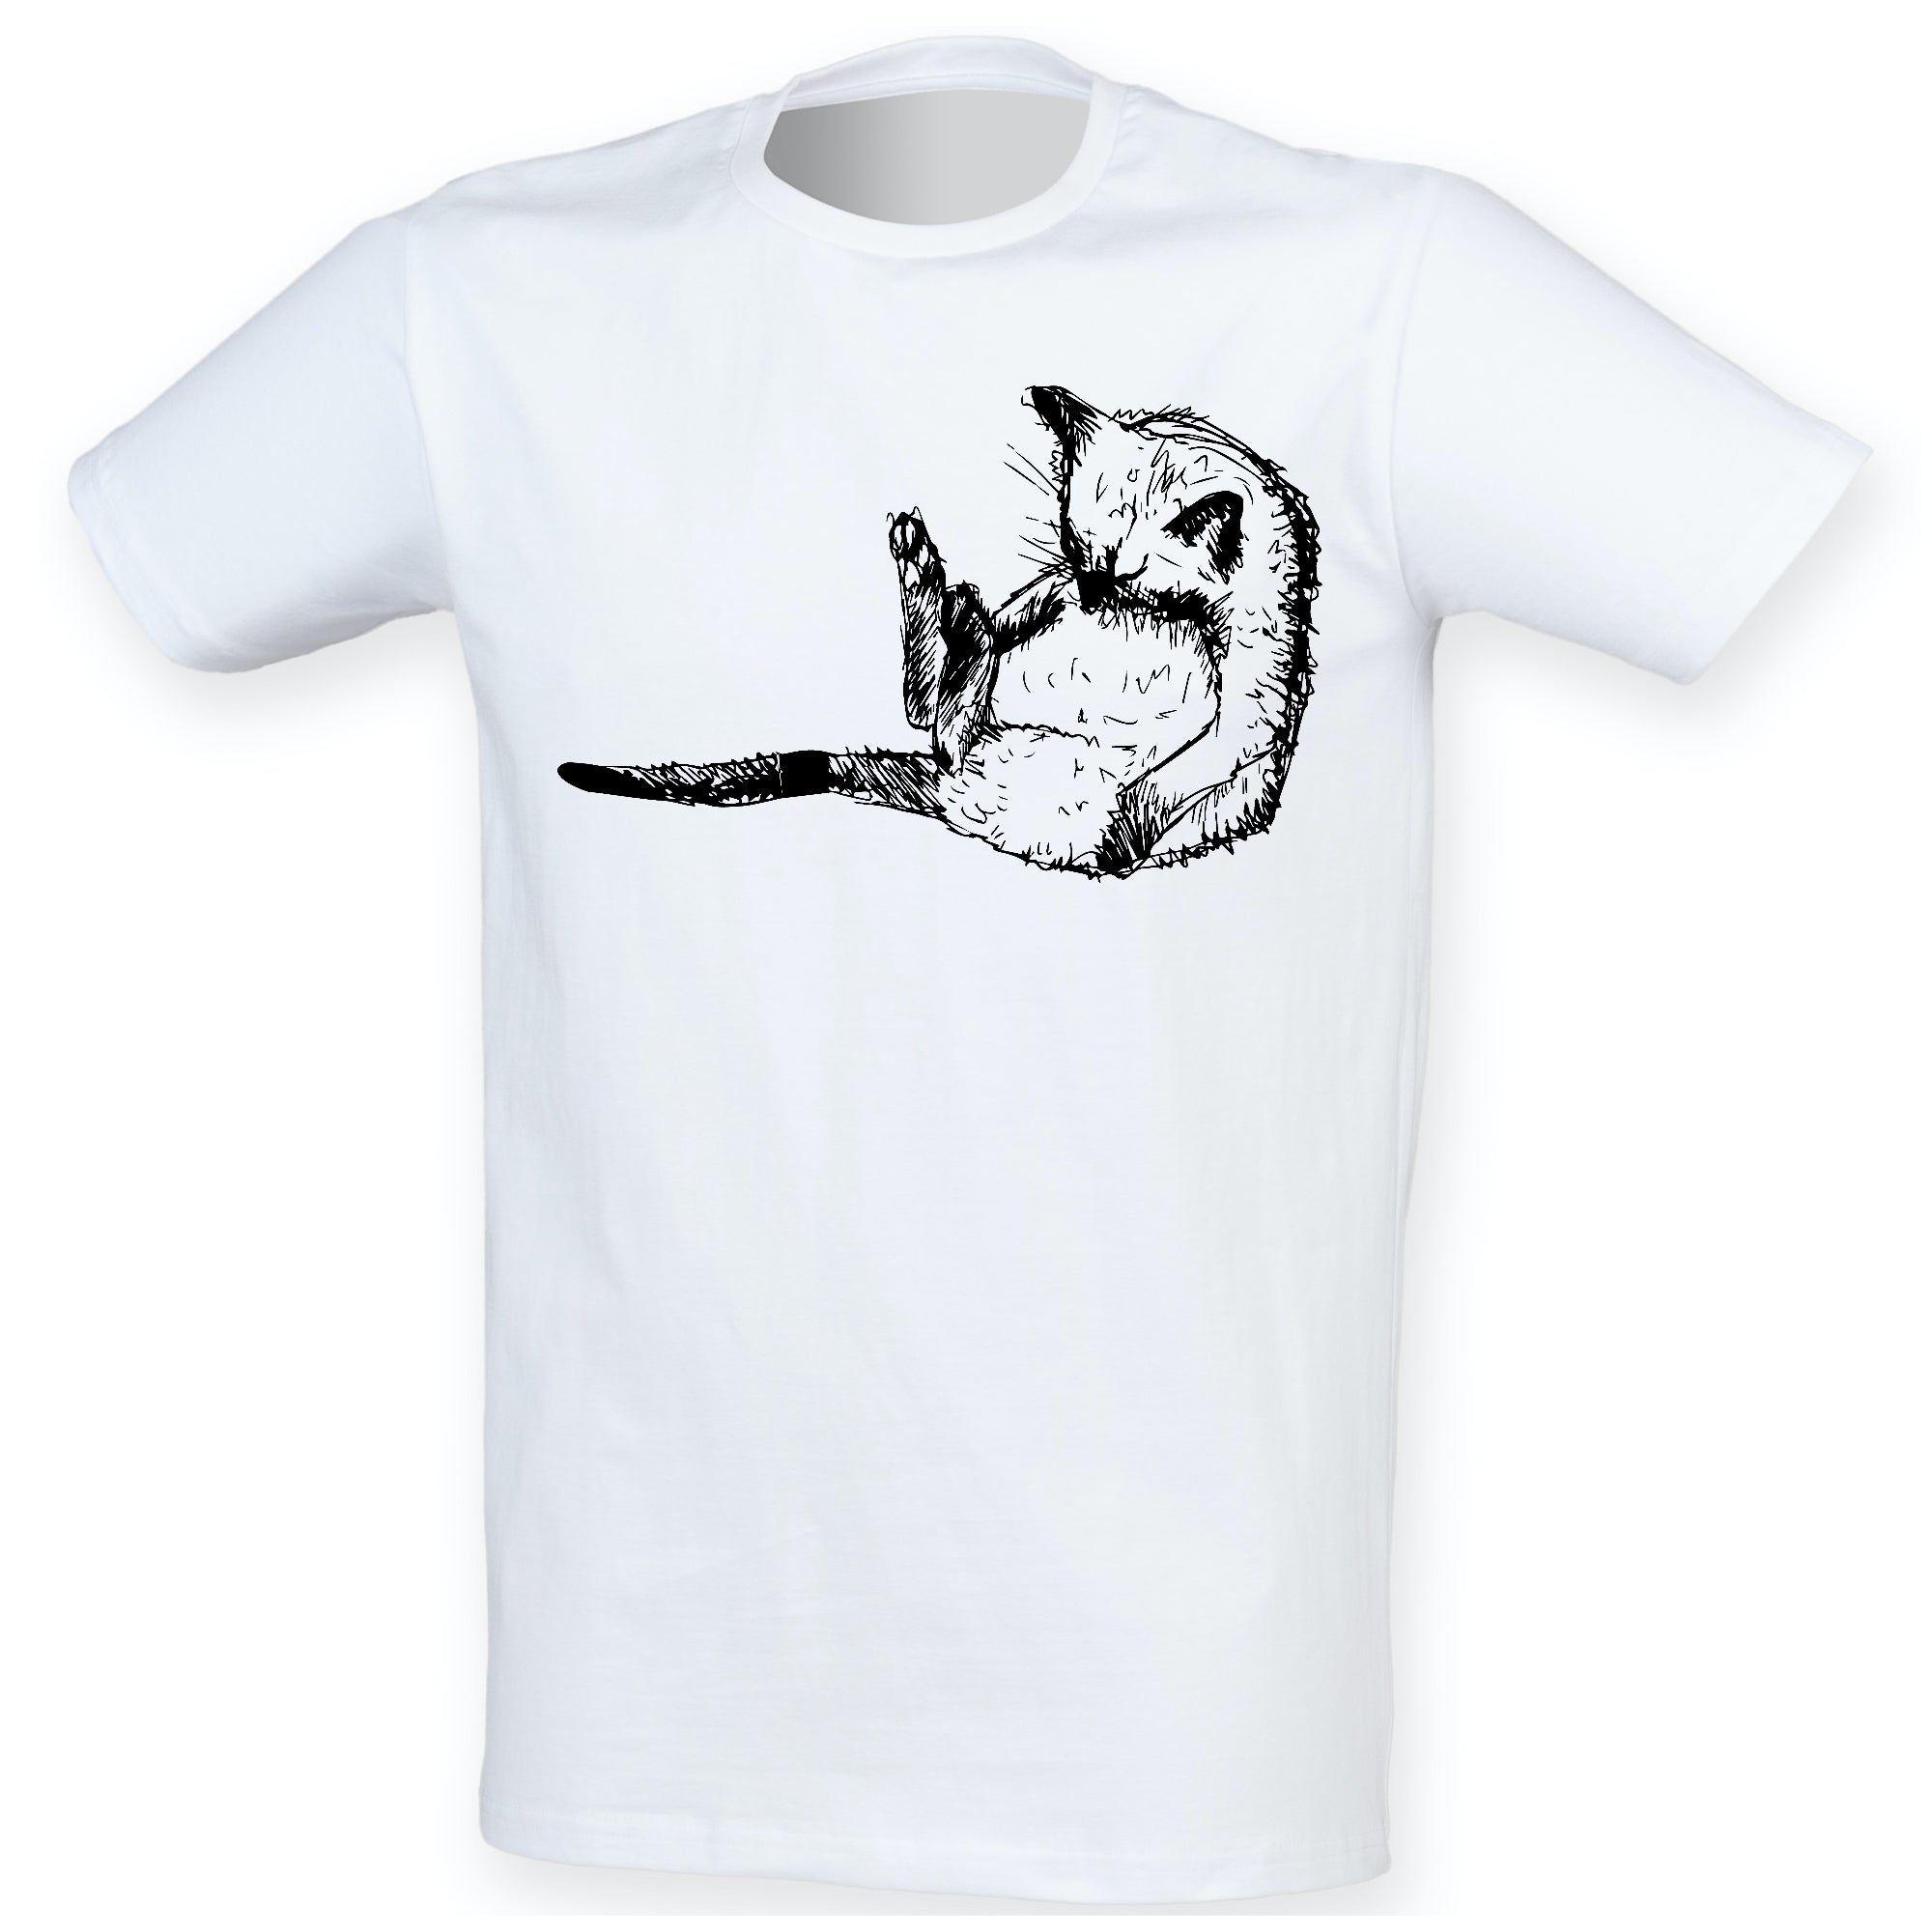 Sleeping cat men t-shirt